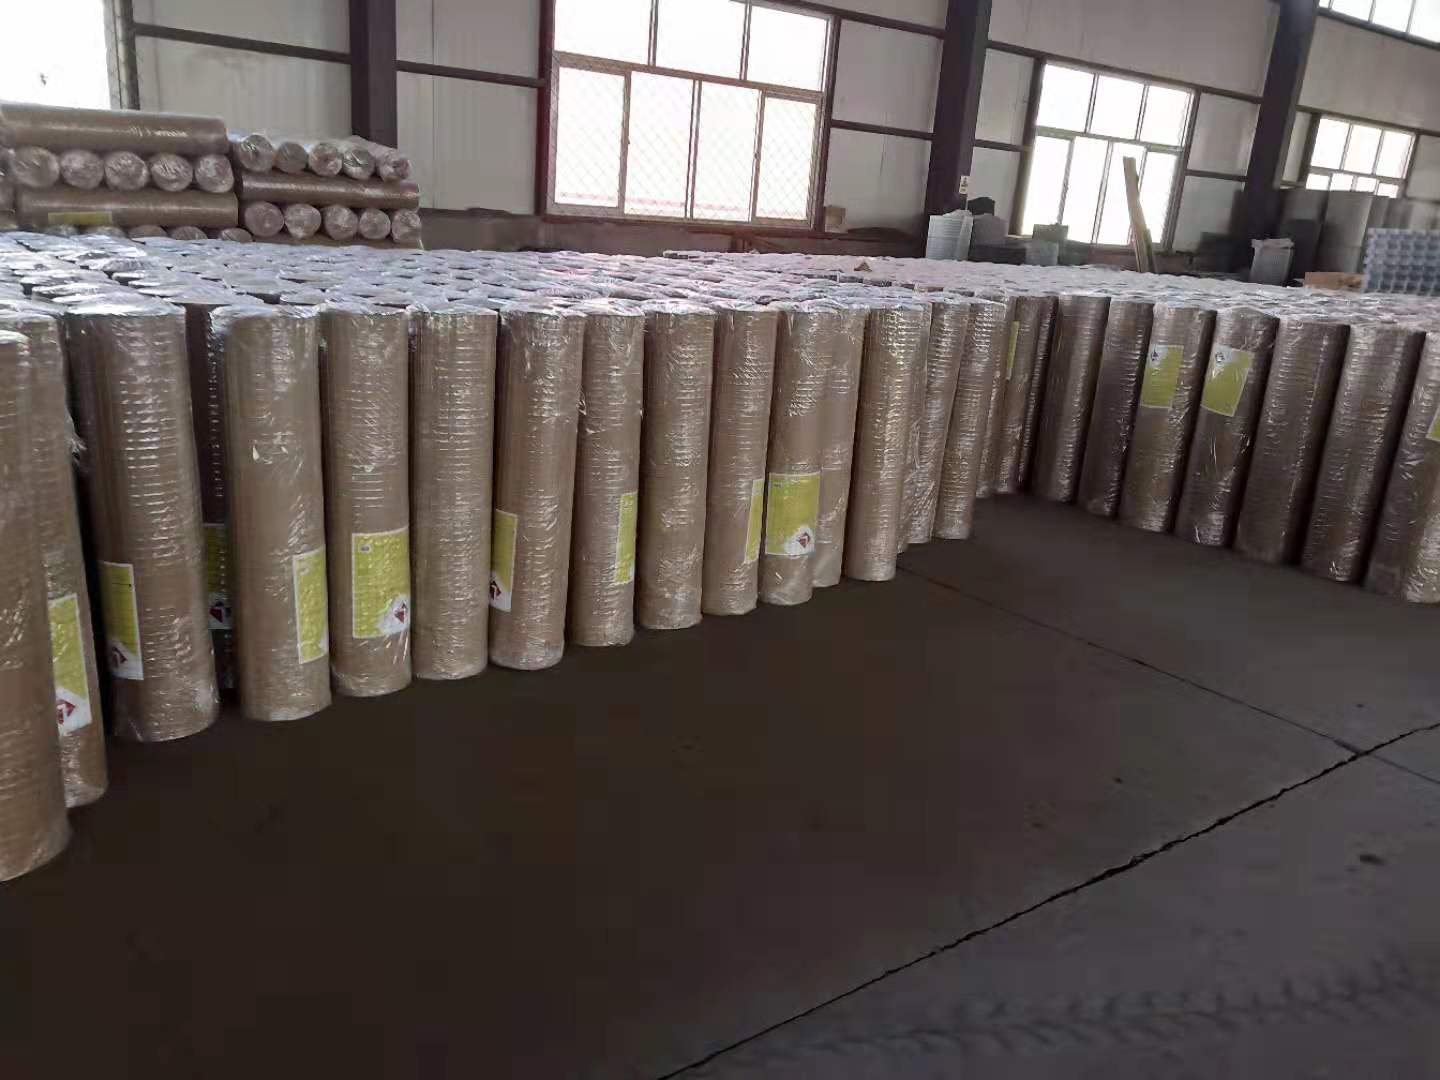 安平厂家直销养殖建筑电焊网铁丝网焊接网防护网安装价格品质保证